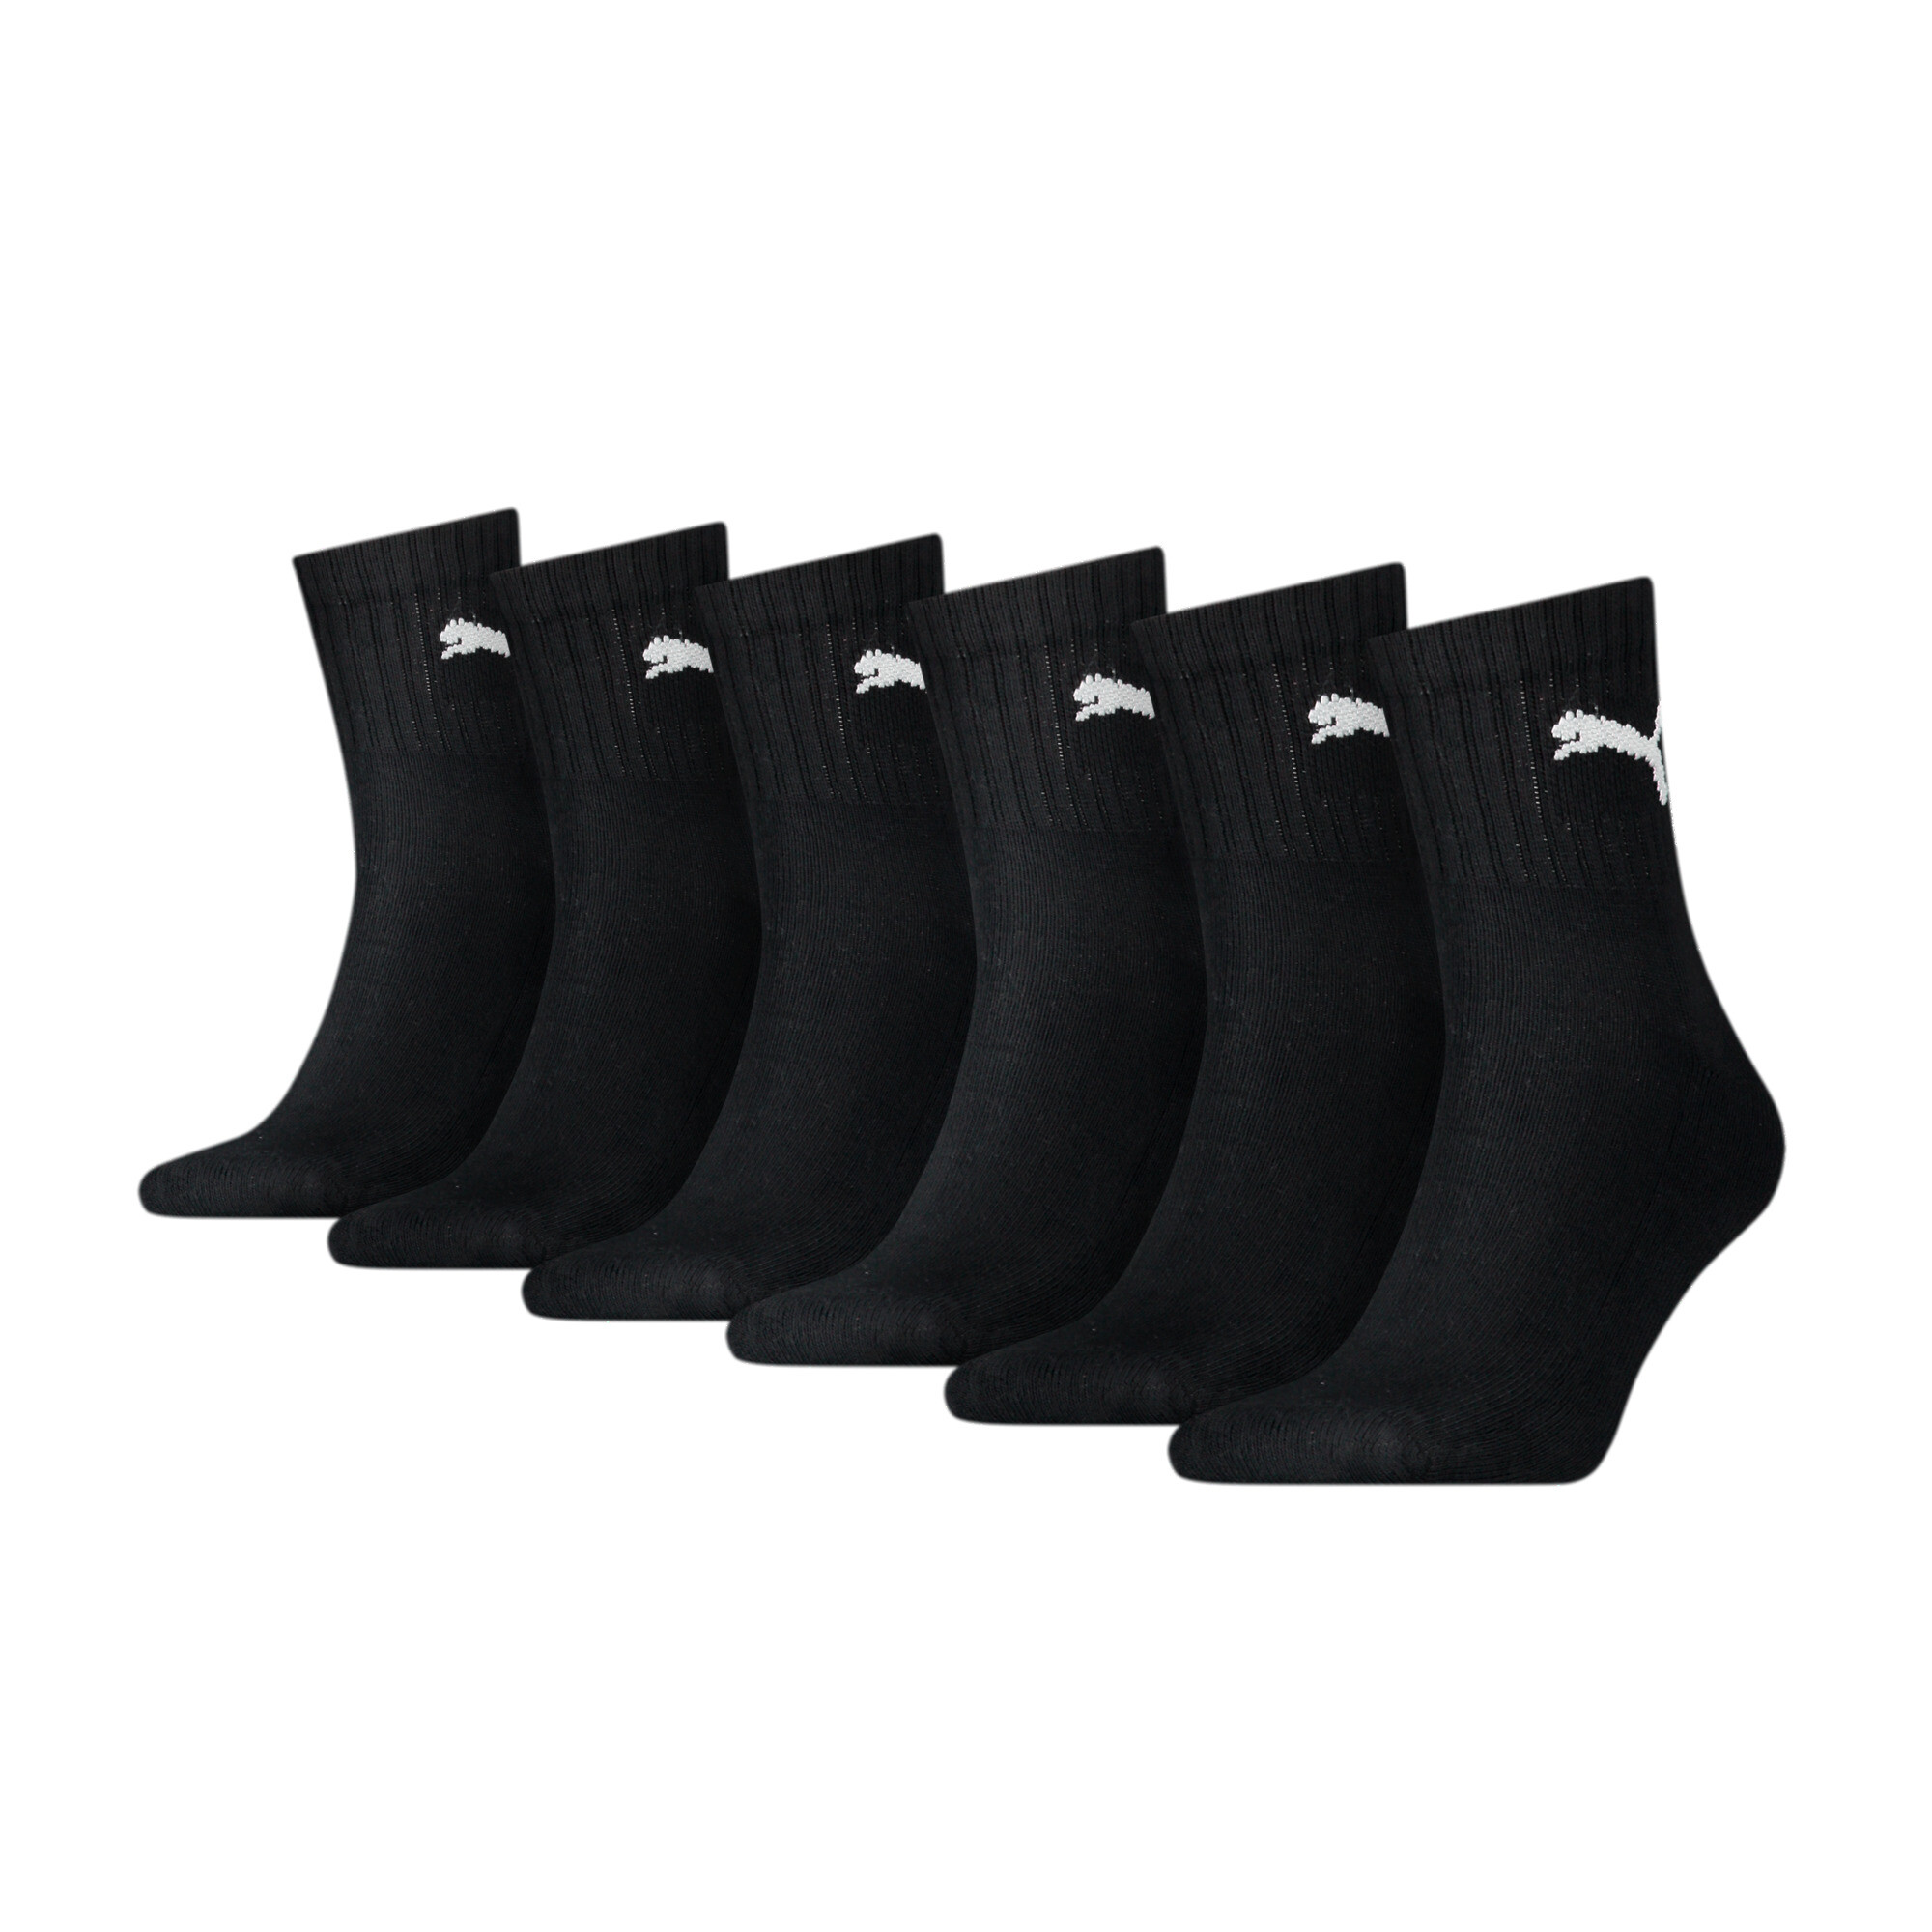 Puma Unisex Short Crew Shirt Socks 6 Pack, Black, Size 43-46, Clothing